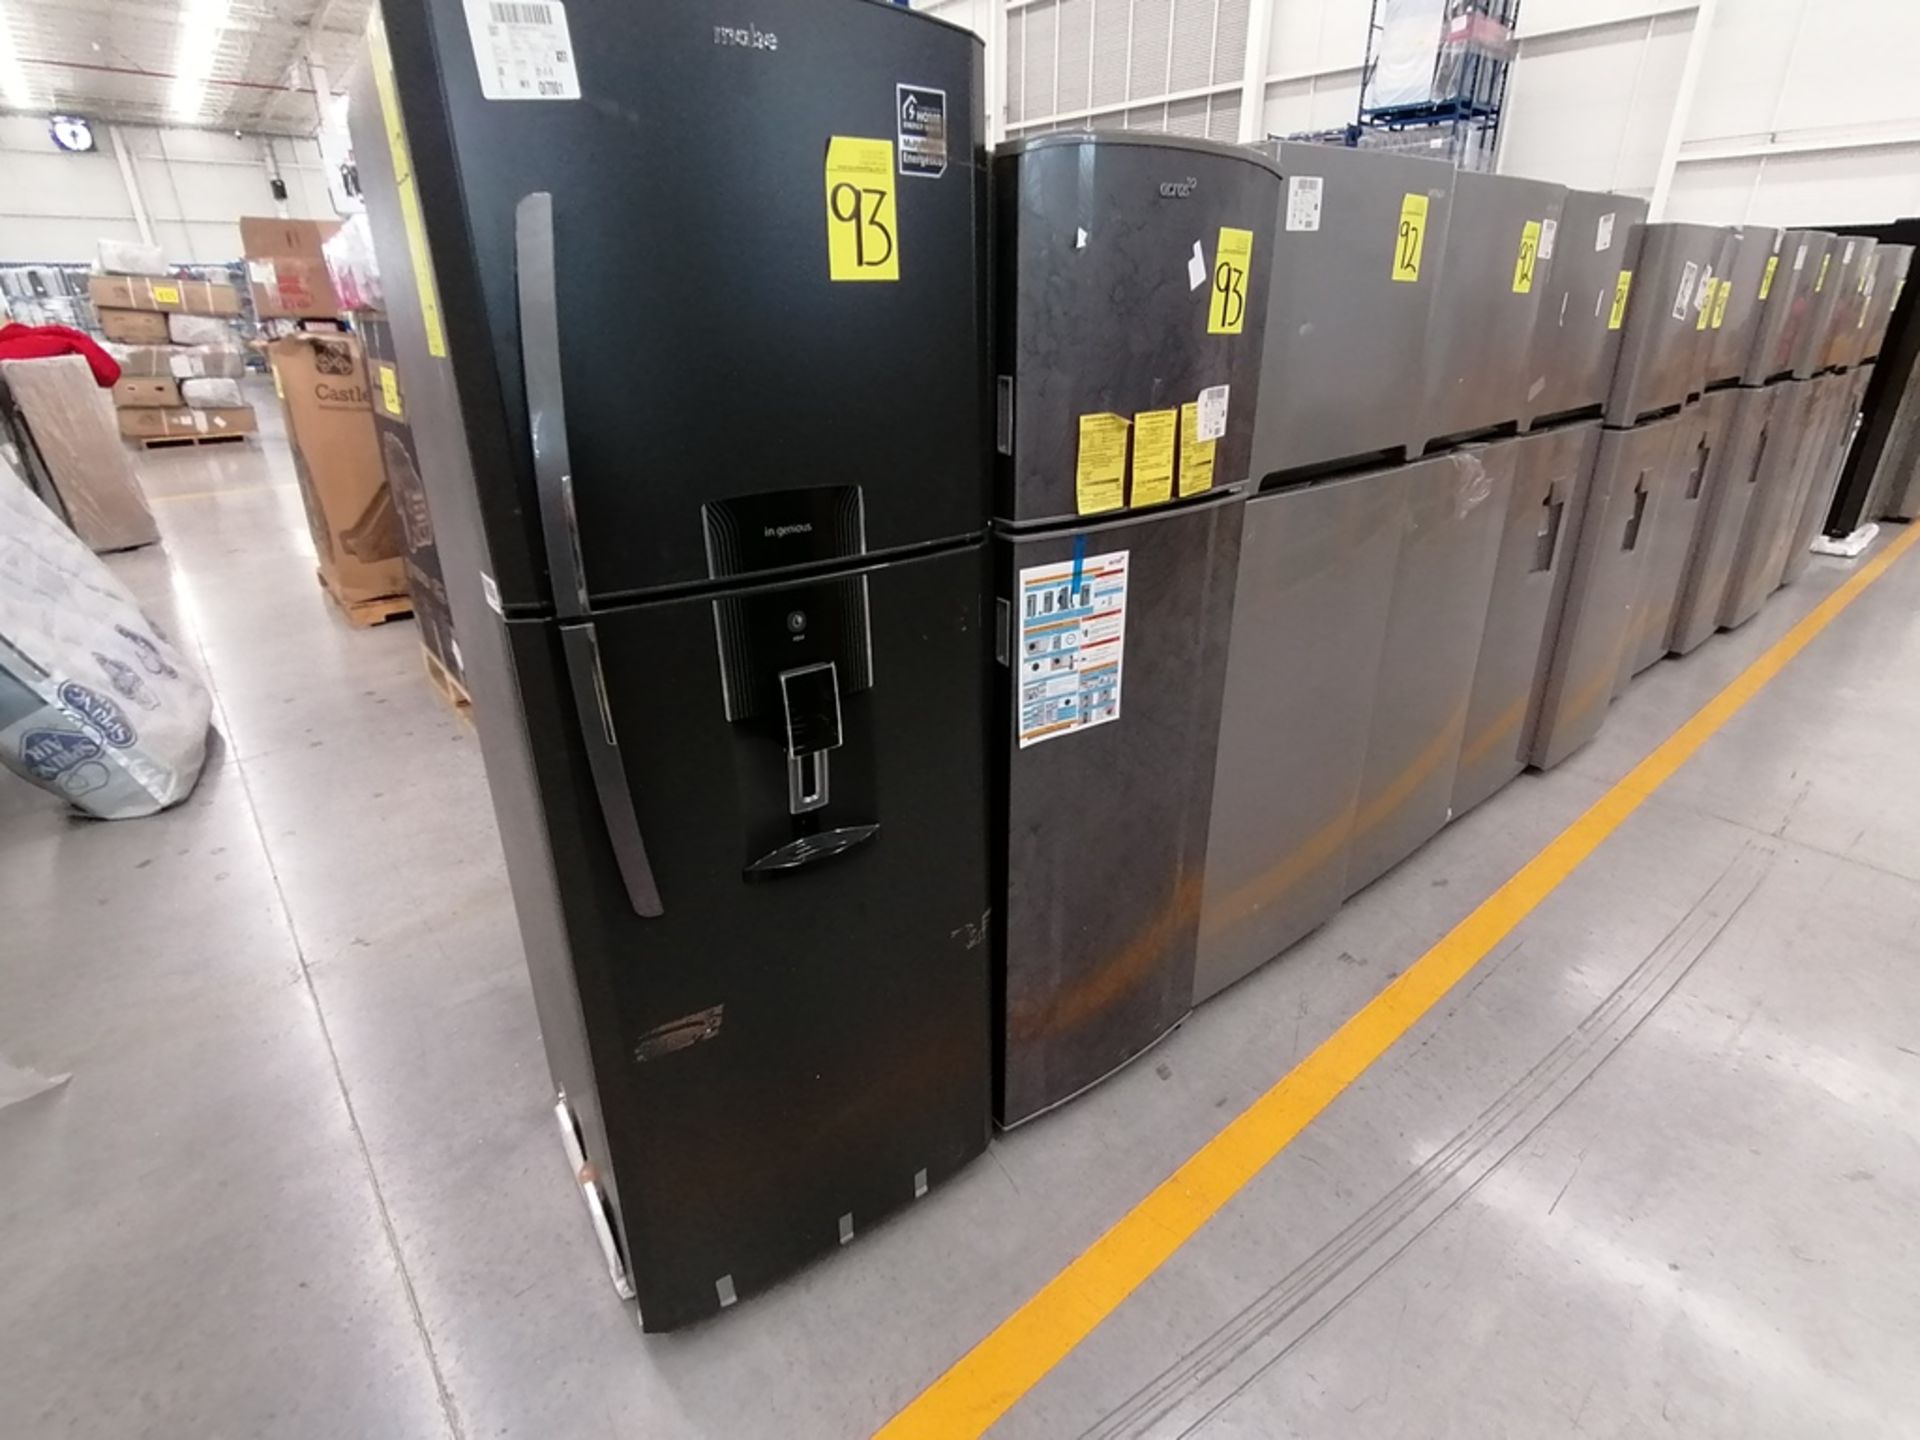 Lote de 2 Refrigeradores incluye: 1 Refrigerador, Marca Winia, Modelo DFR32210GNV, Serie MR217N104 - Image 9 of 15